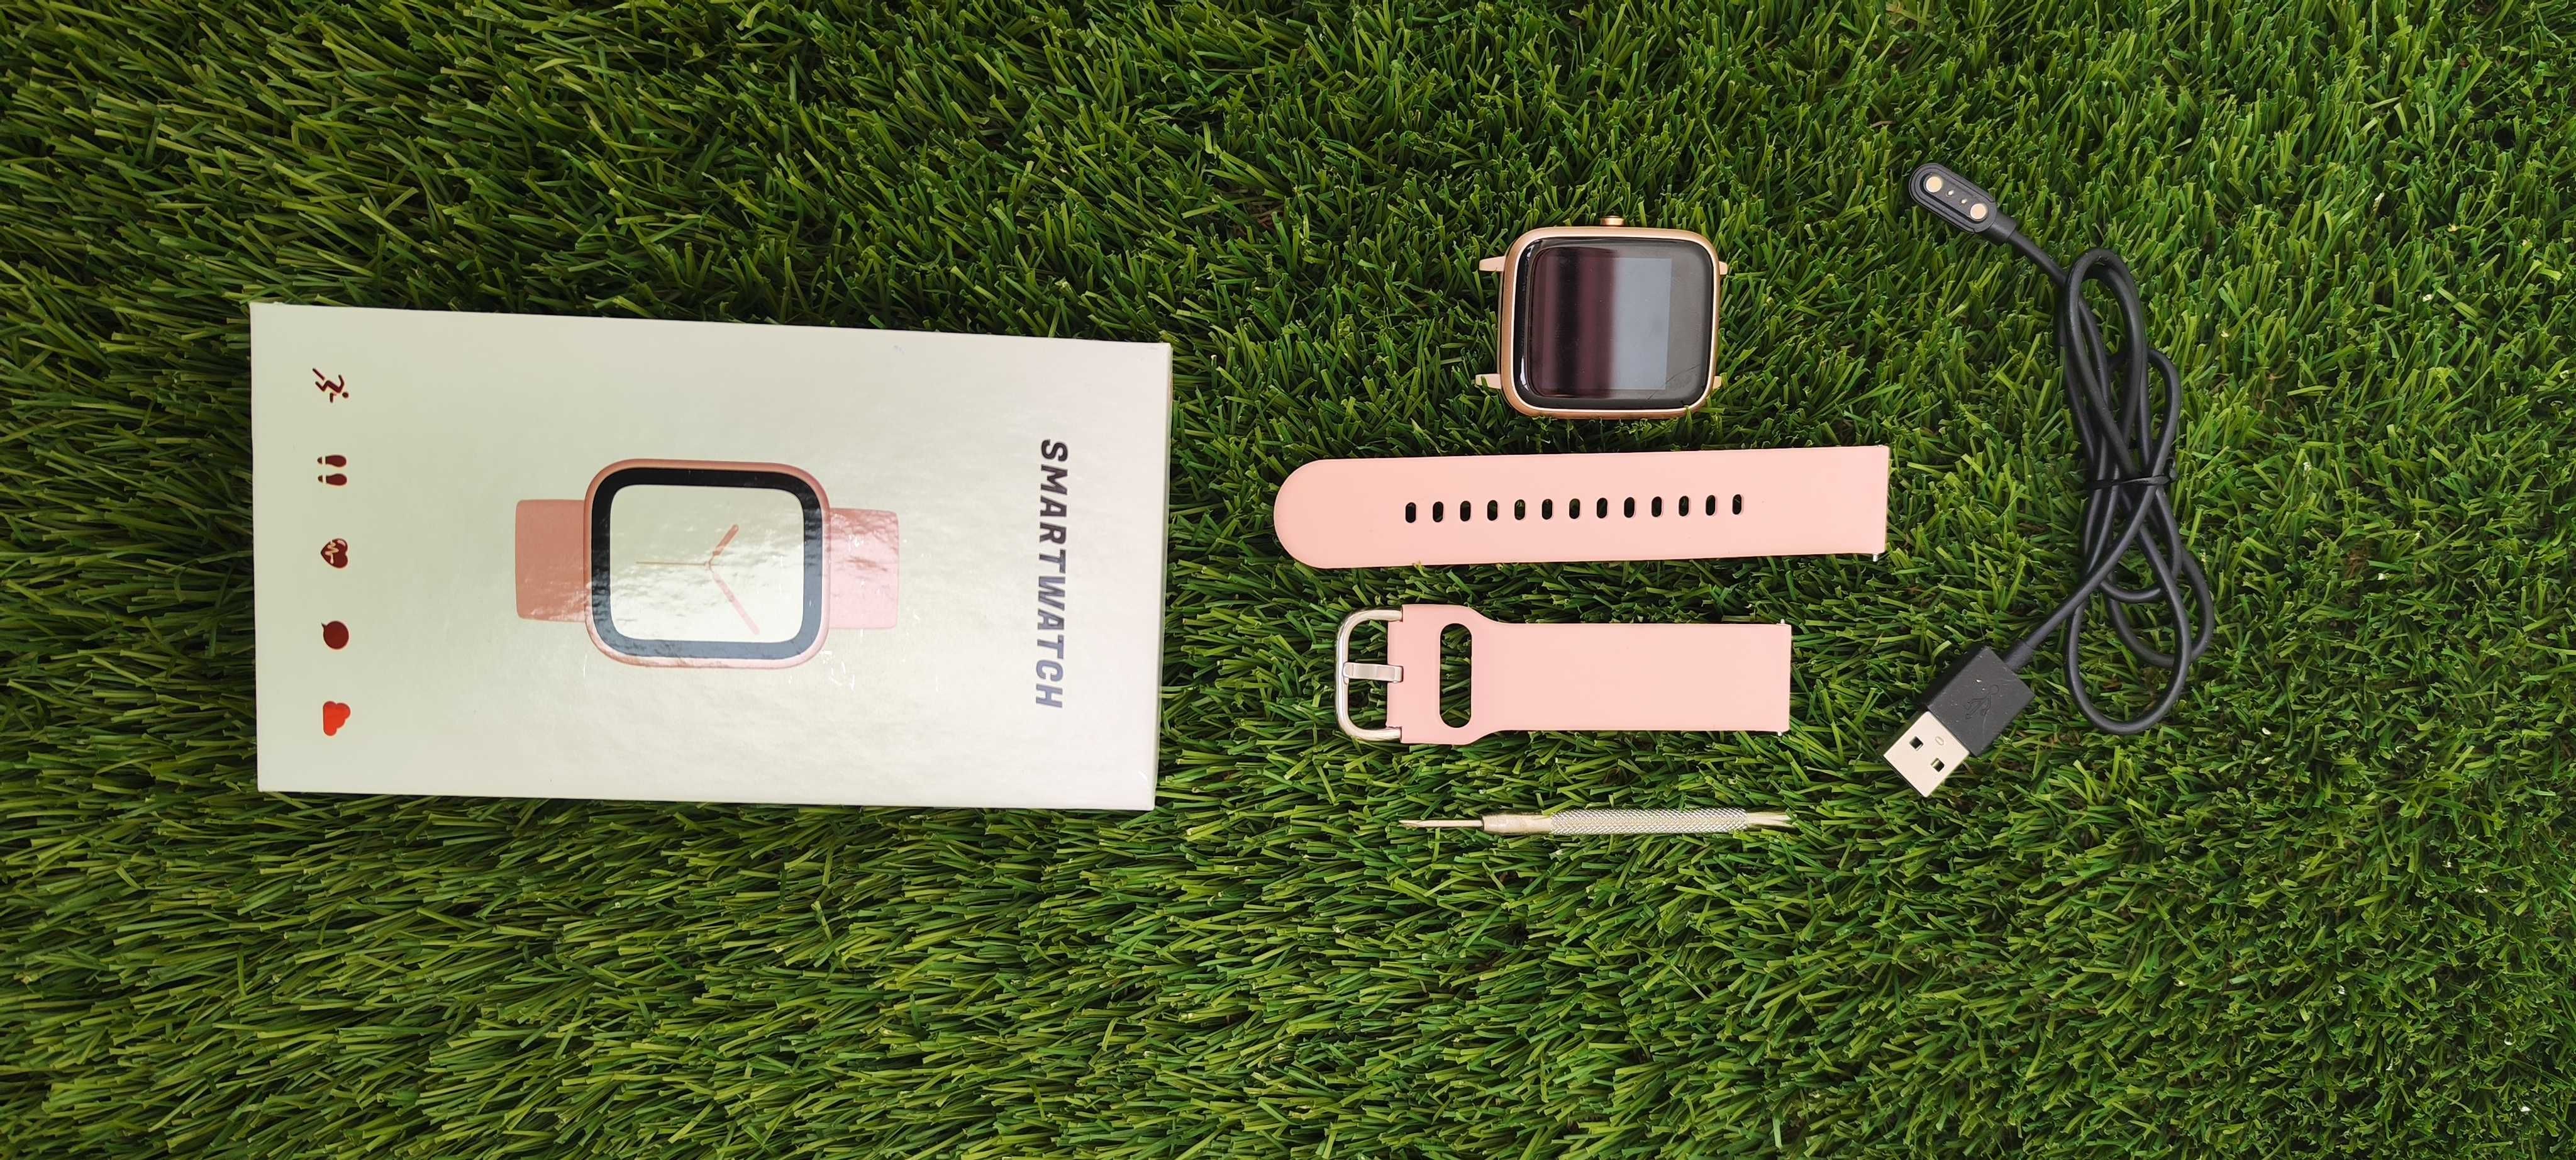 Relógio digital rosa com caixa original